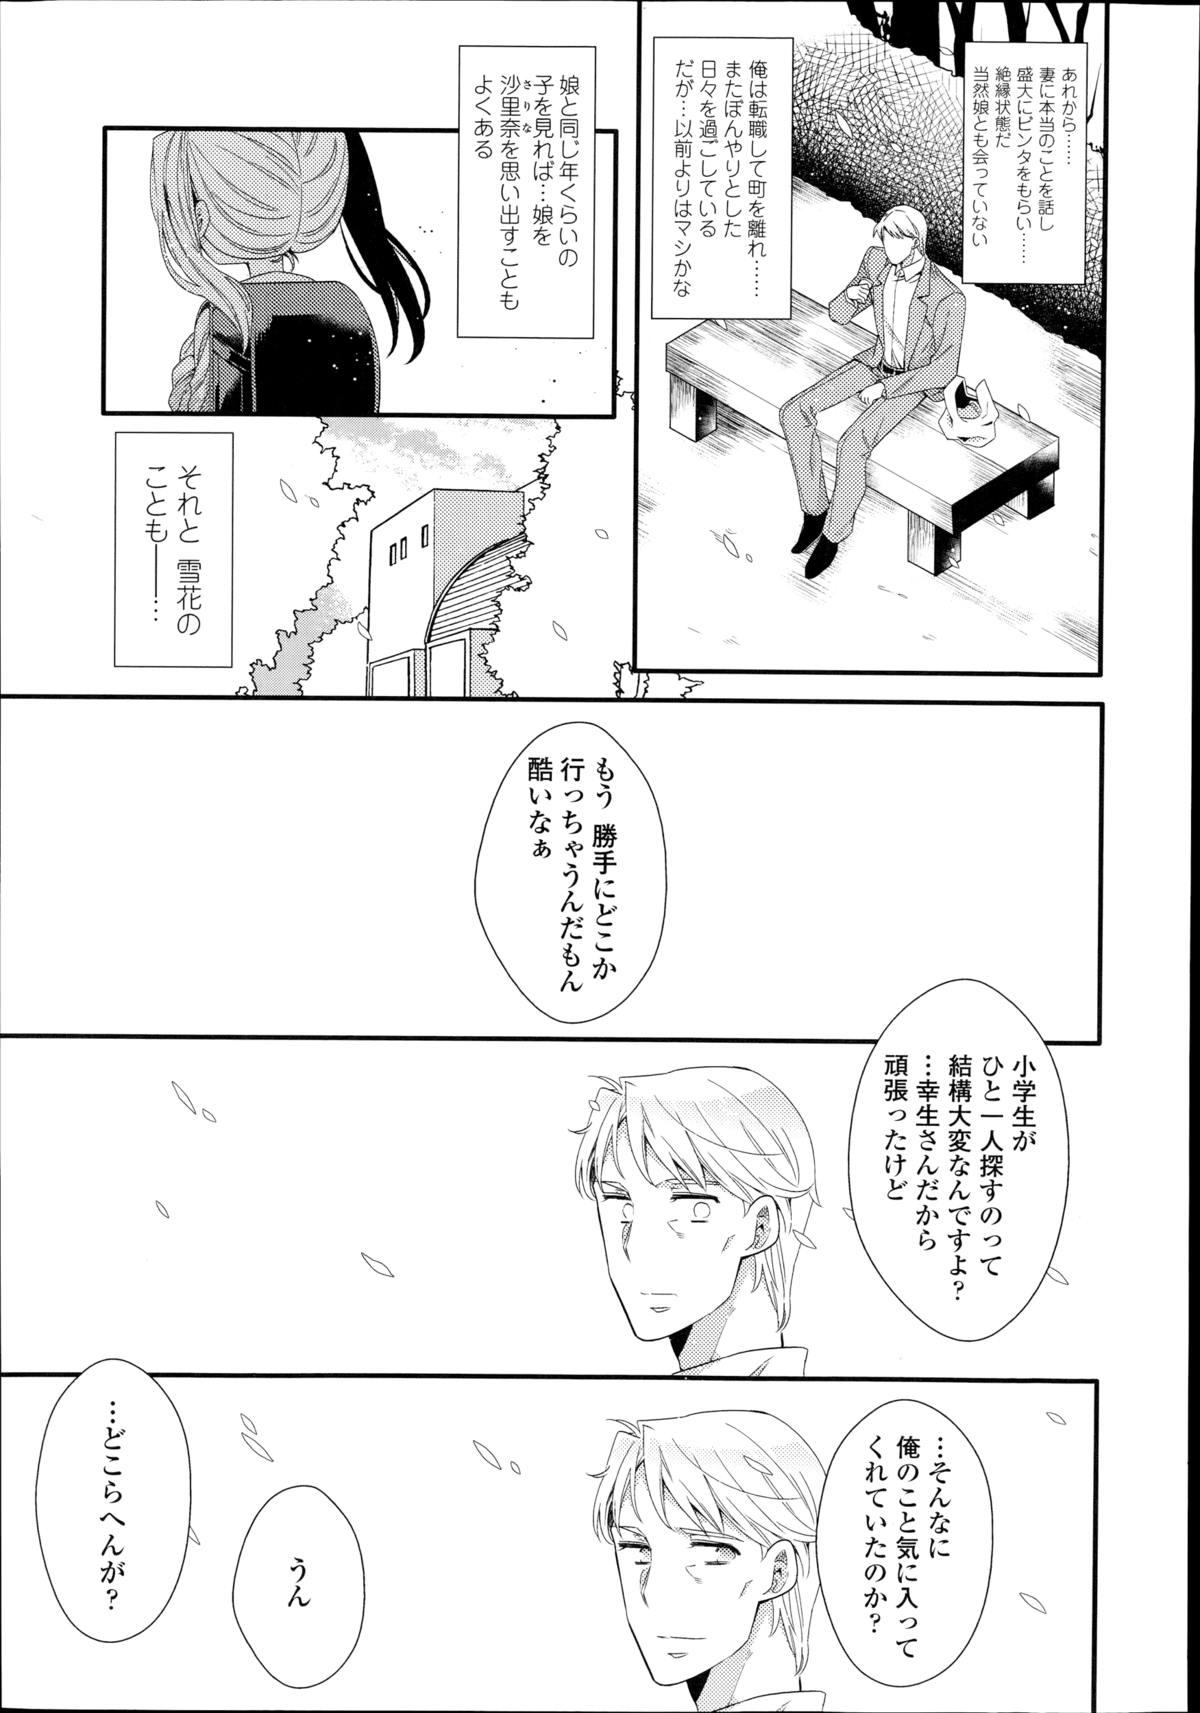 Cei Shirayukihime no Yuuutsu Rubdown - Page 51